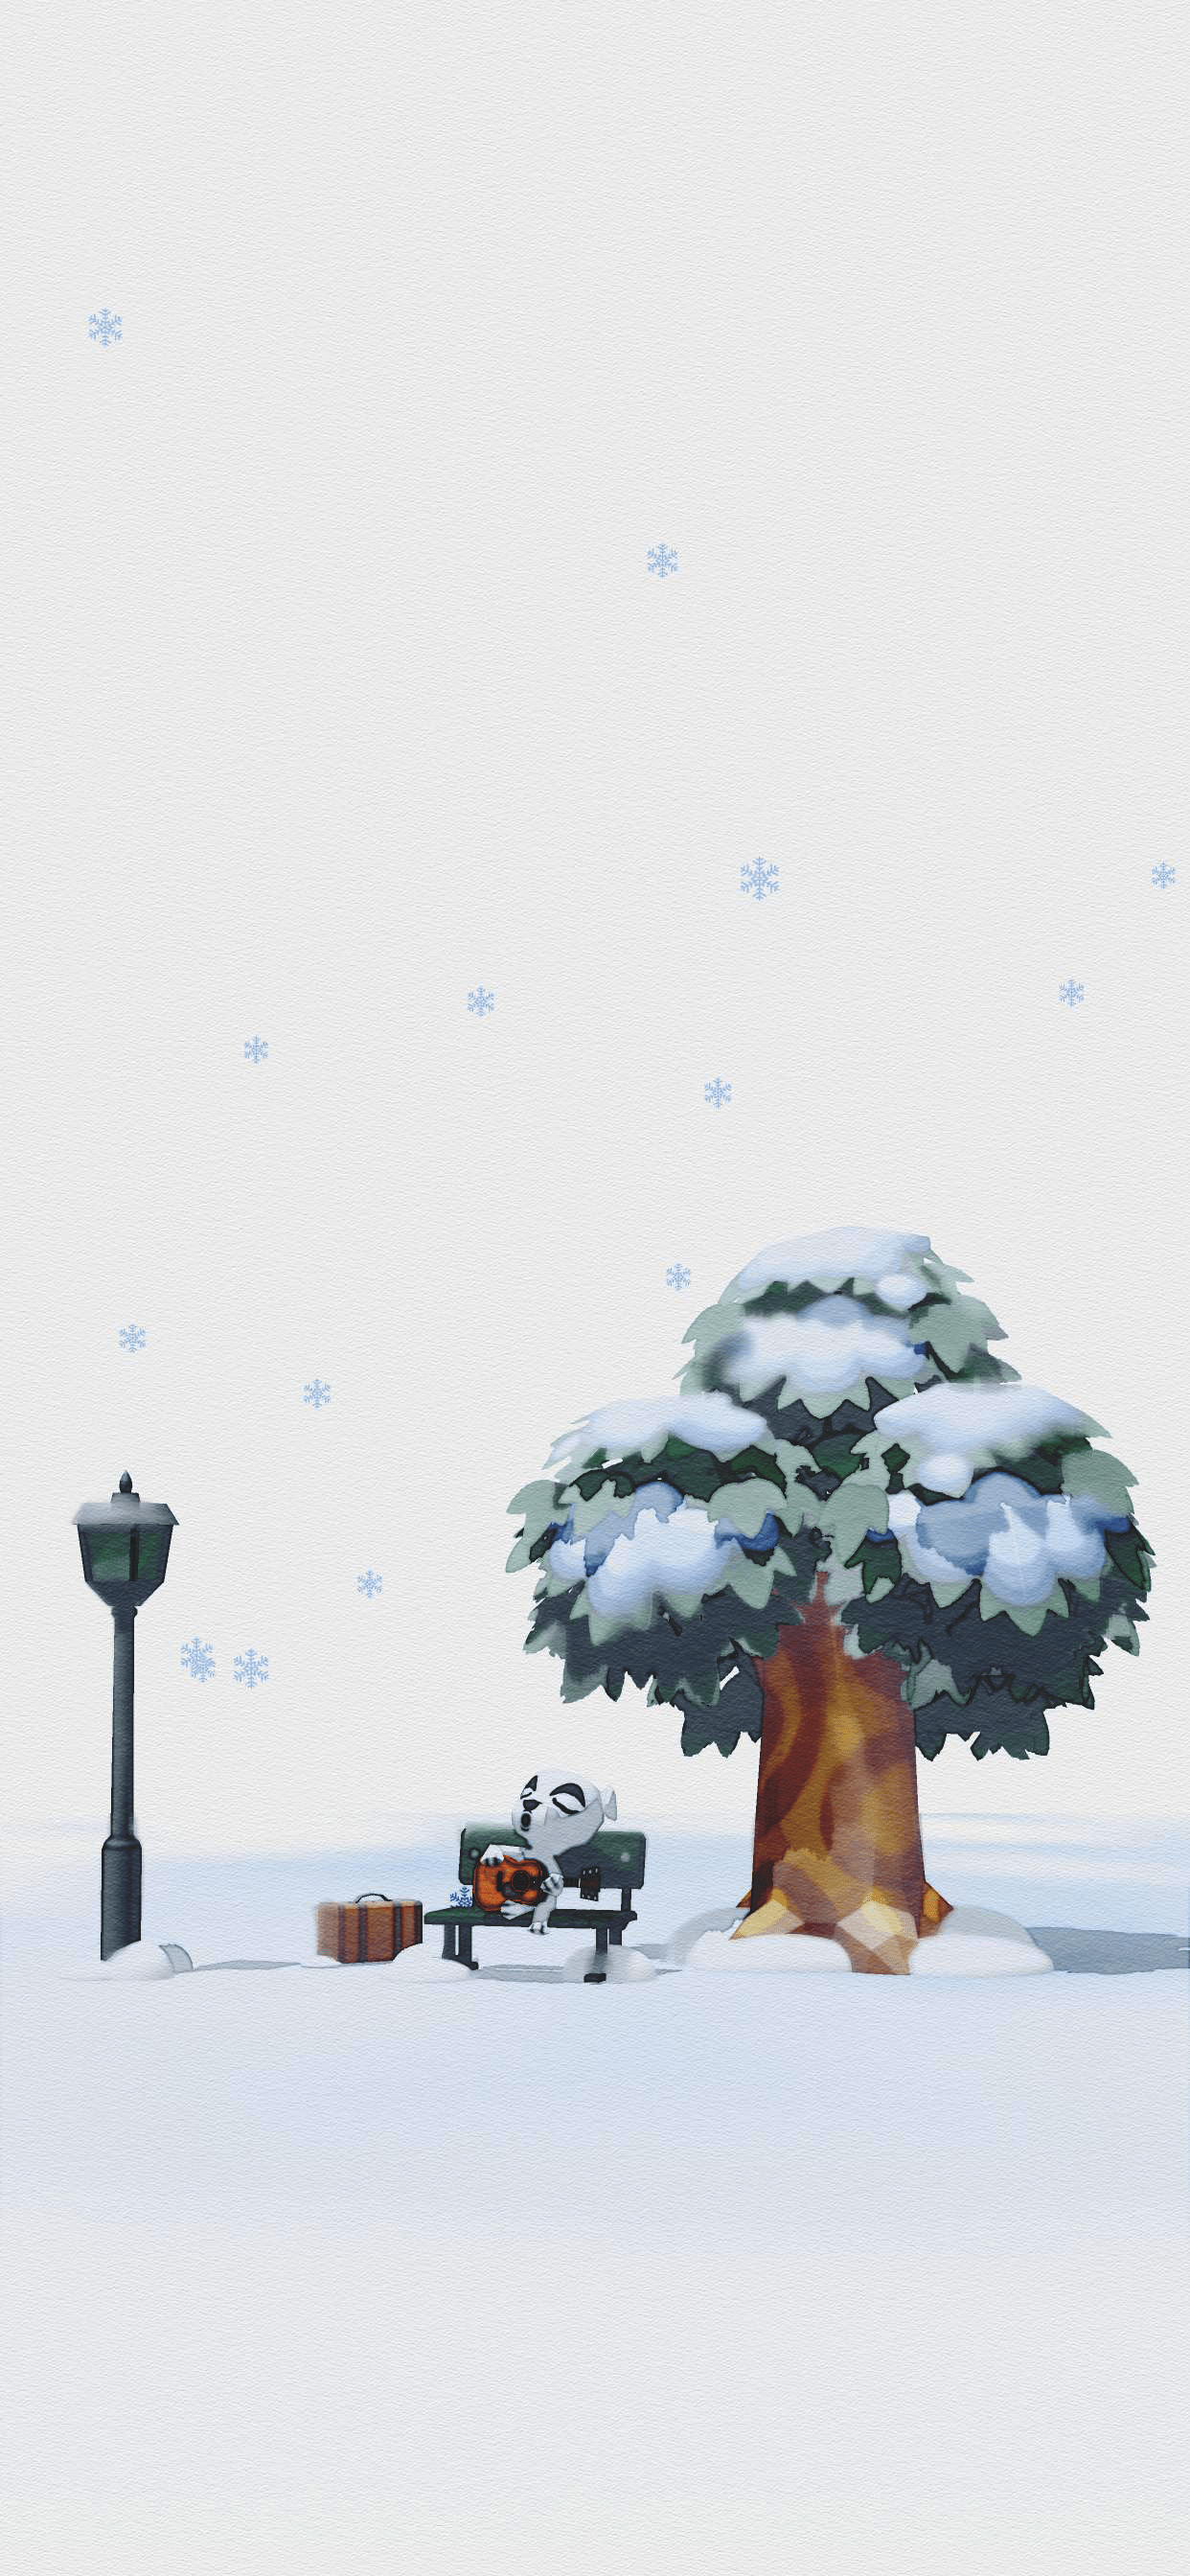 Animal Crossing Wallpaper Winter